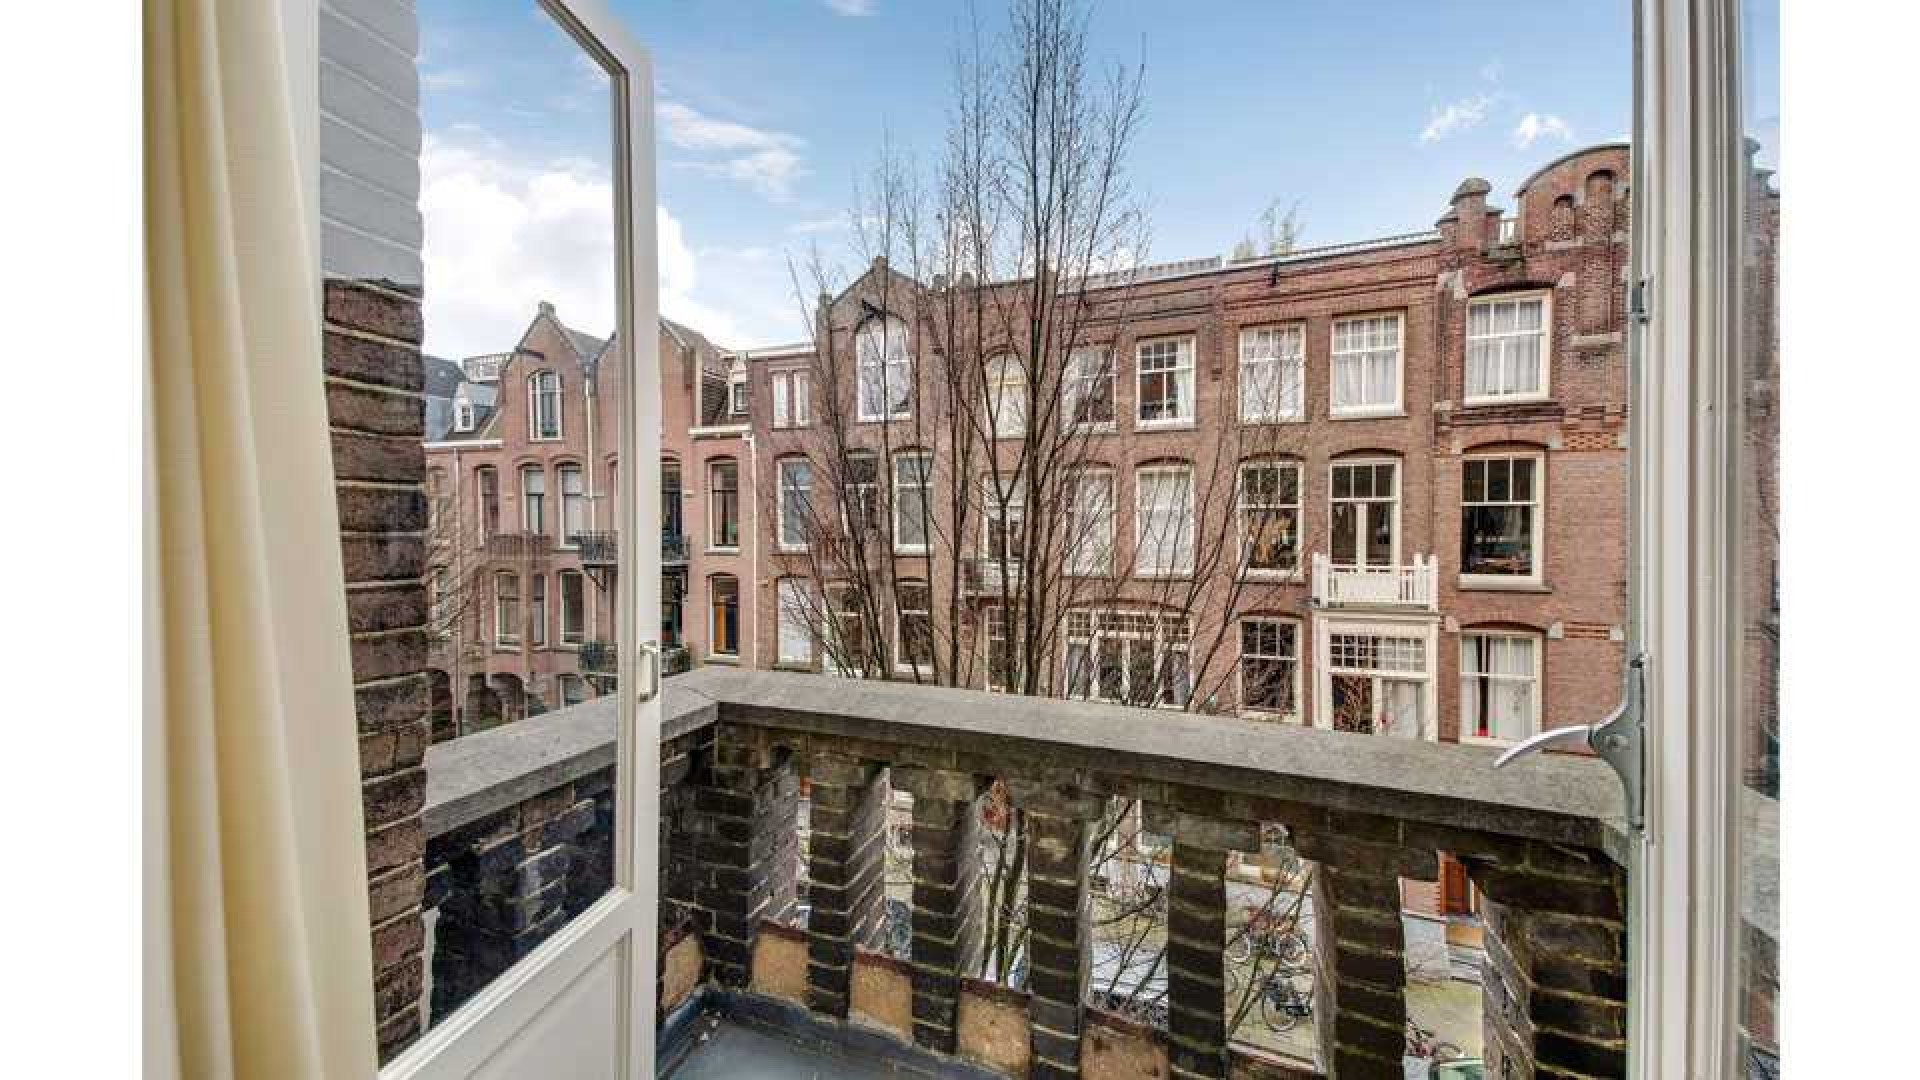 Mode koningin Sheila de Vries verkoopt haar driedubbele bovenhuis in Amsterdam Zuid met vette winst. Zie foto's 10